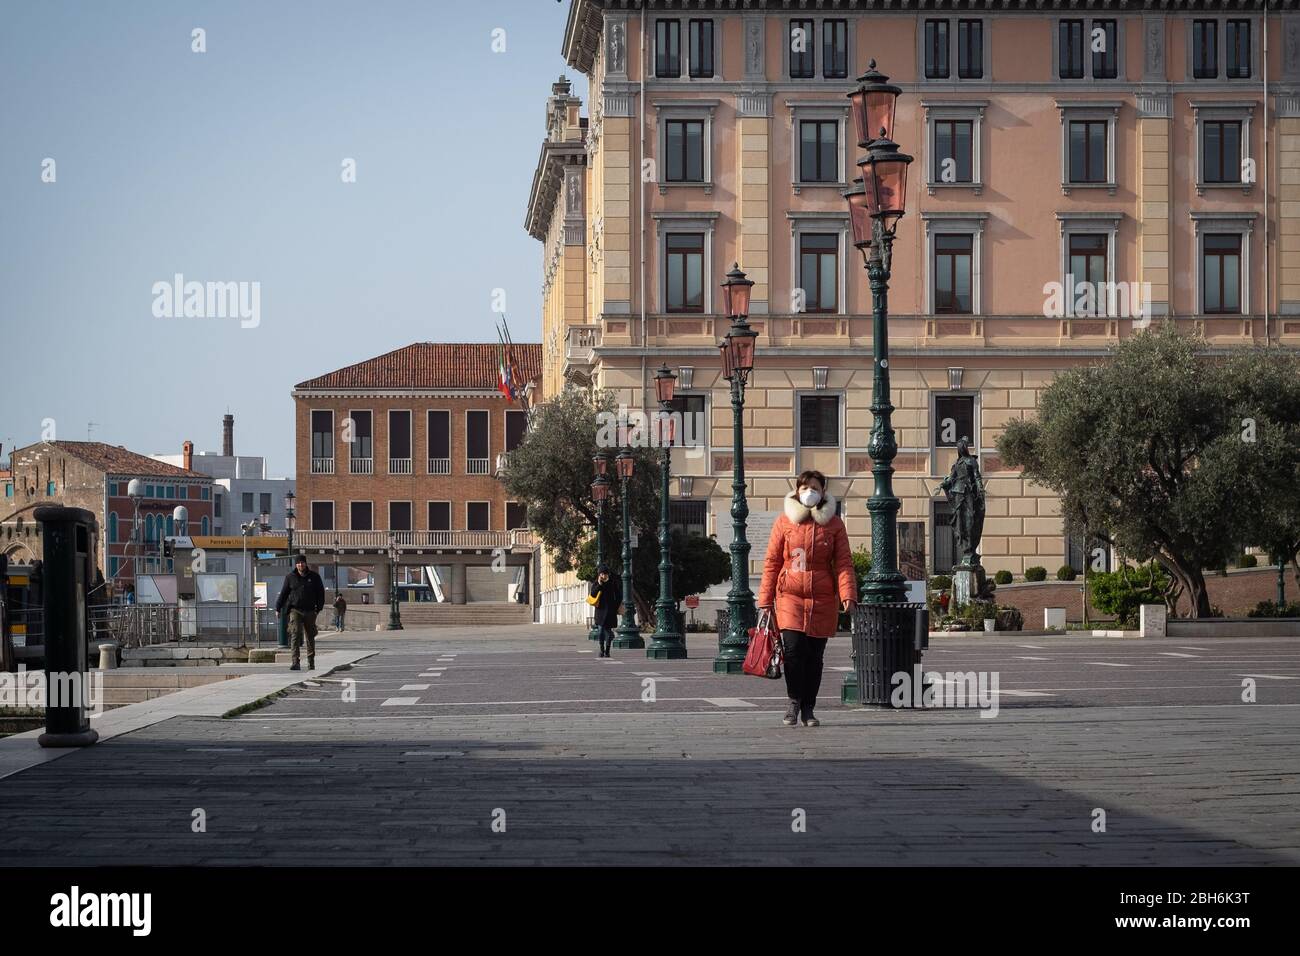 VENEZIA, ITALIA - APRILE 2020: Una donna cammina indossando una maschera protettiva durante il periodo di chiusura nazionale per la pandemia Covid-19. Foto Stock